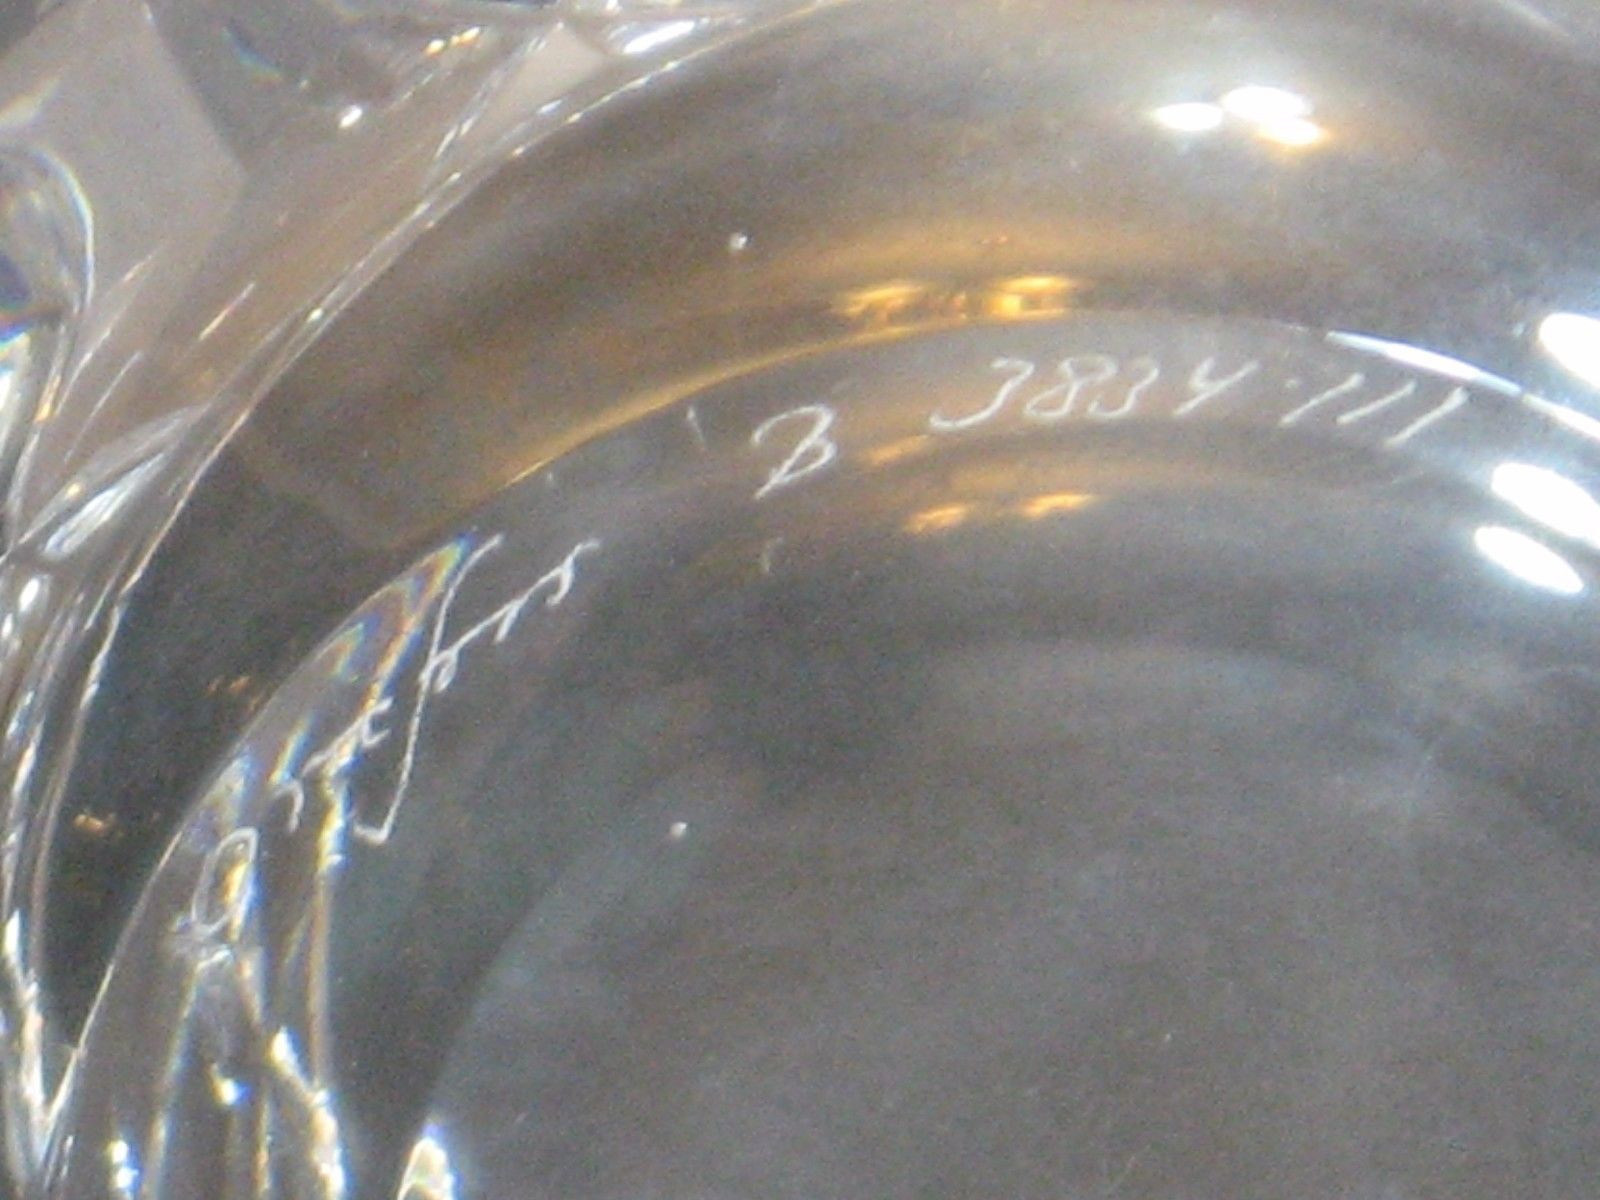 orrefors crystal vase sweden signed of orrefors sofiero round crystal bowl 4 5 stunning cut sweden with 8 of 11 orrefors sofiero round crystal bowl 4 5 stunning cut sweden signed 10 of 11 orrefors sofiero round crystal bowl